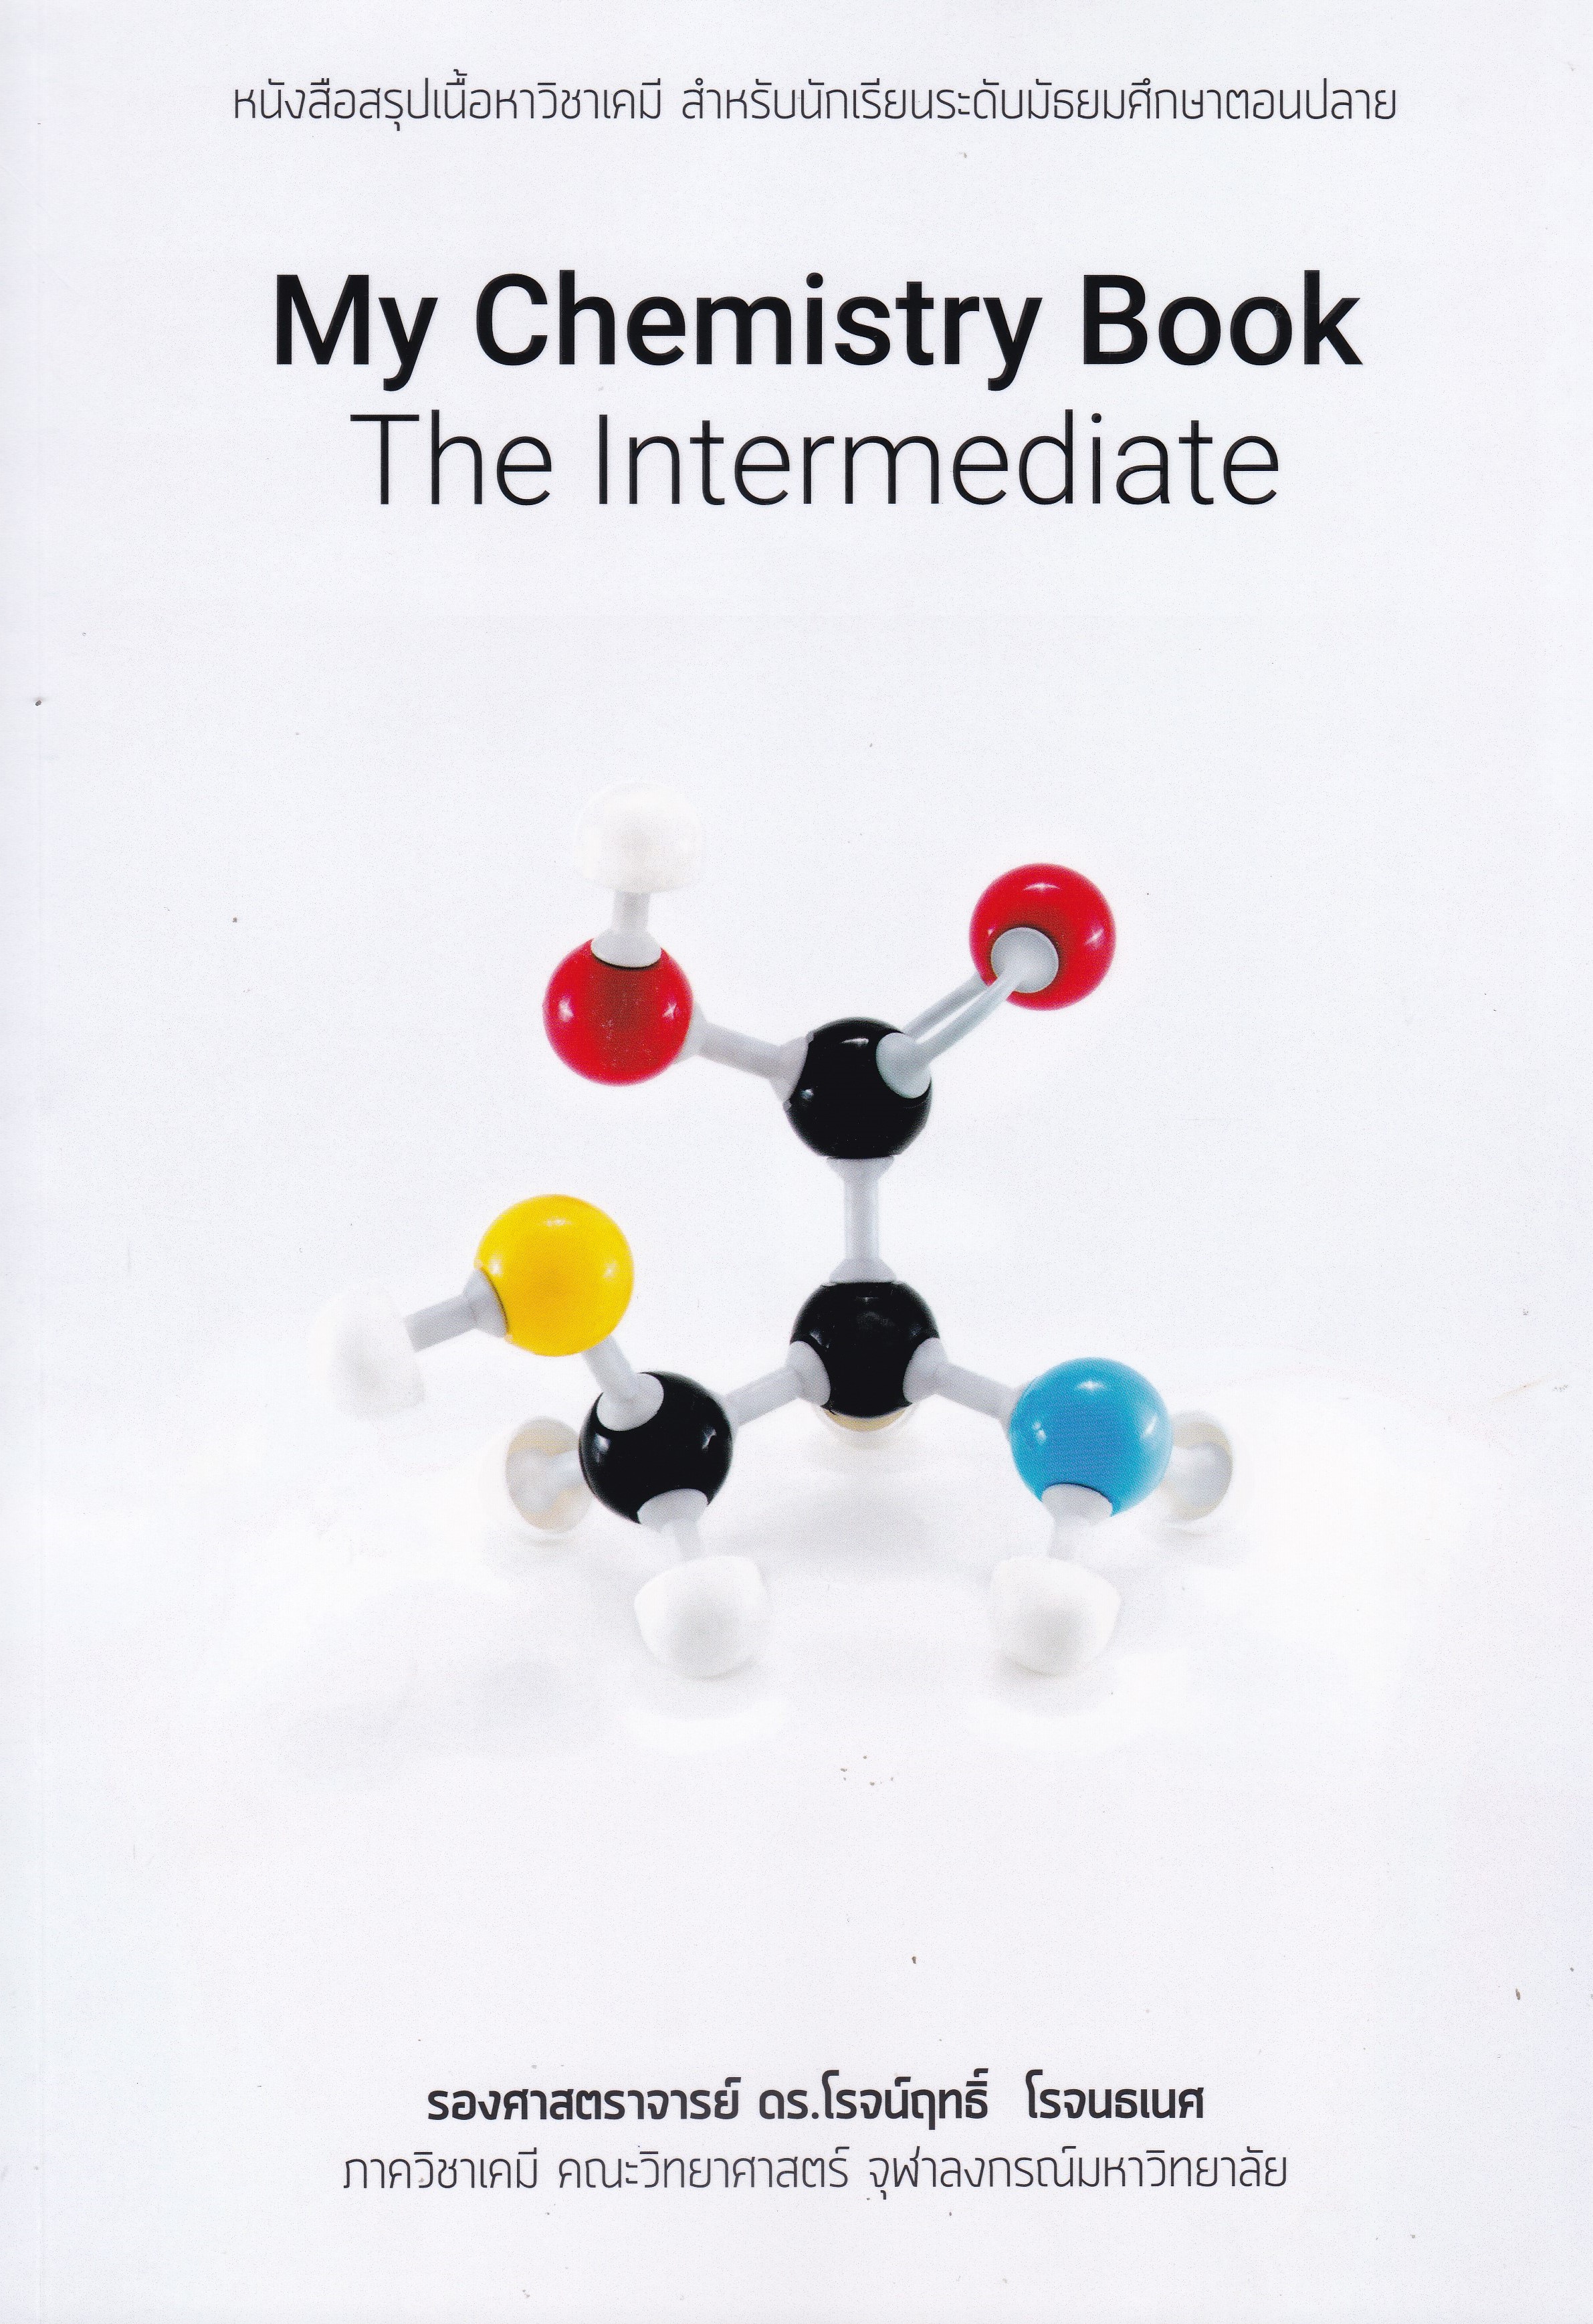 สรุปเนื้อหาวิชาเคมี สำหรับนักเรียนระดับมัธยมตอนปลาย (MY CHEMISTRY BOOK: THE INTERMEDIATE)